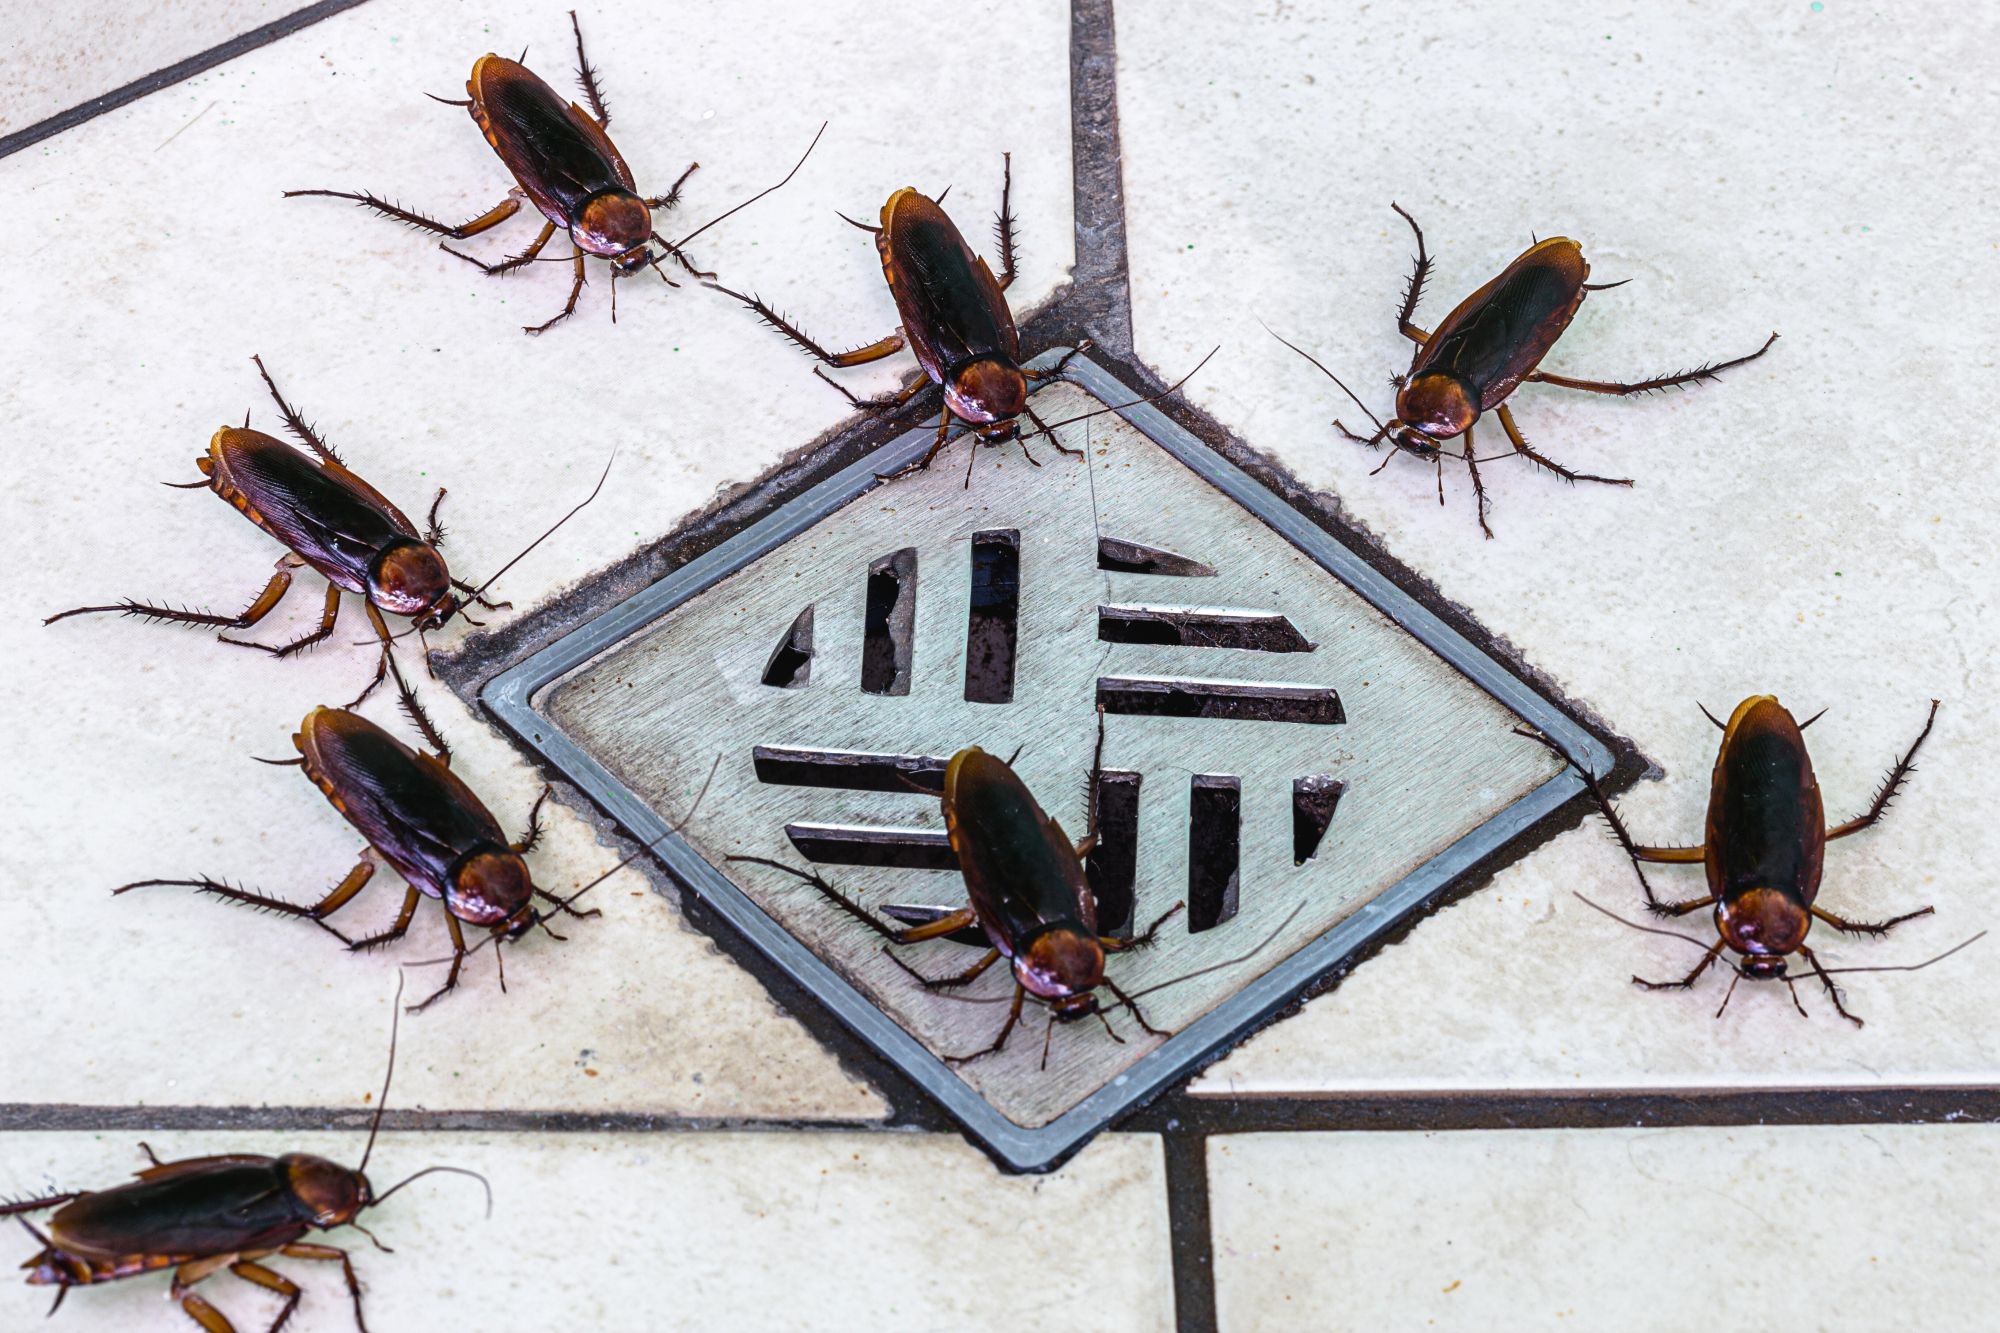 Cockroaches gather near a bathroom drain